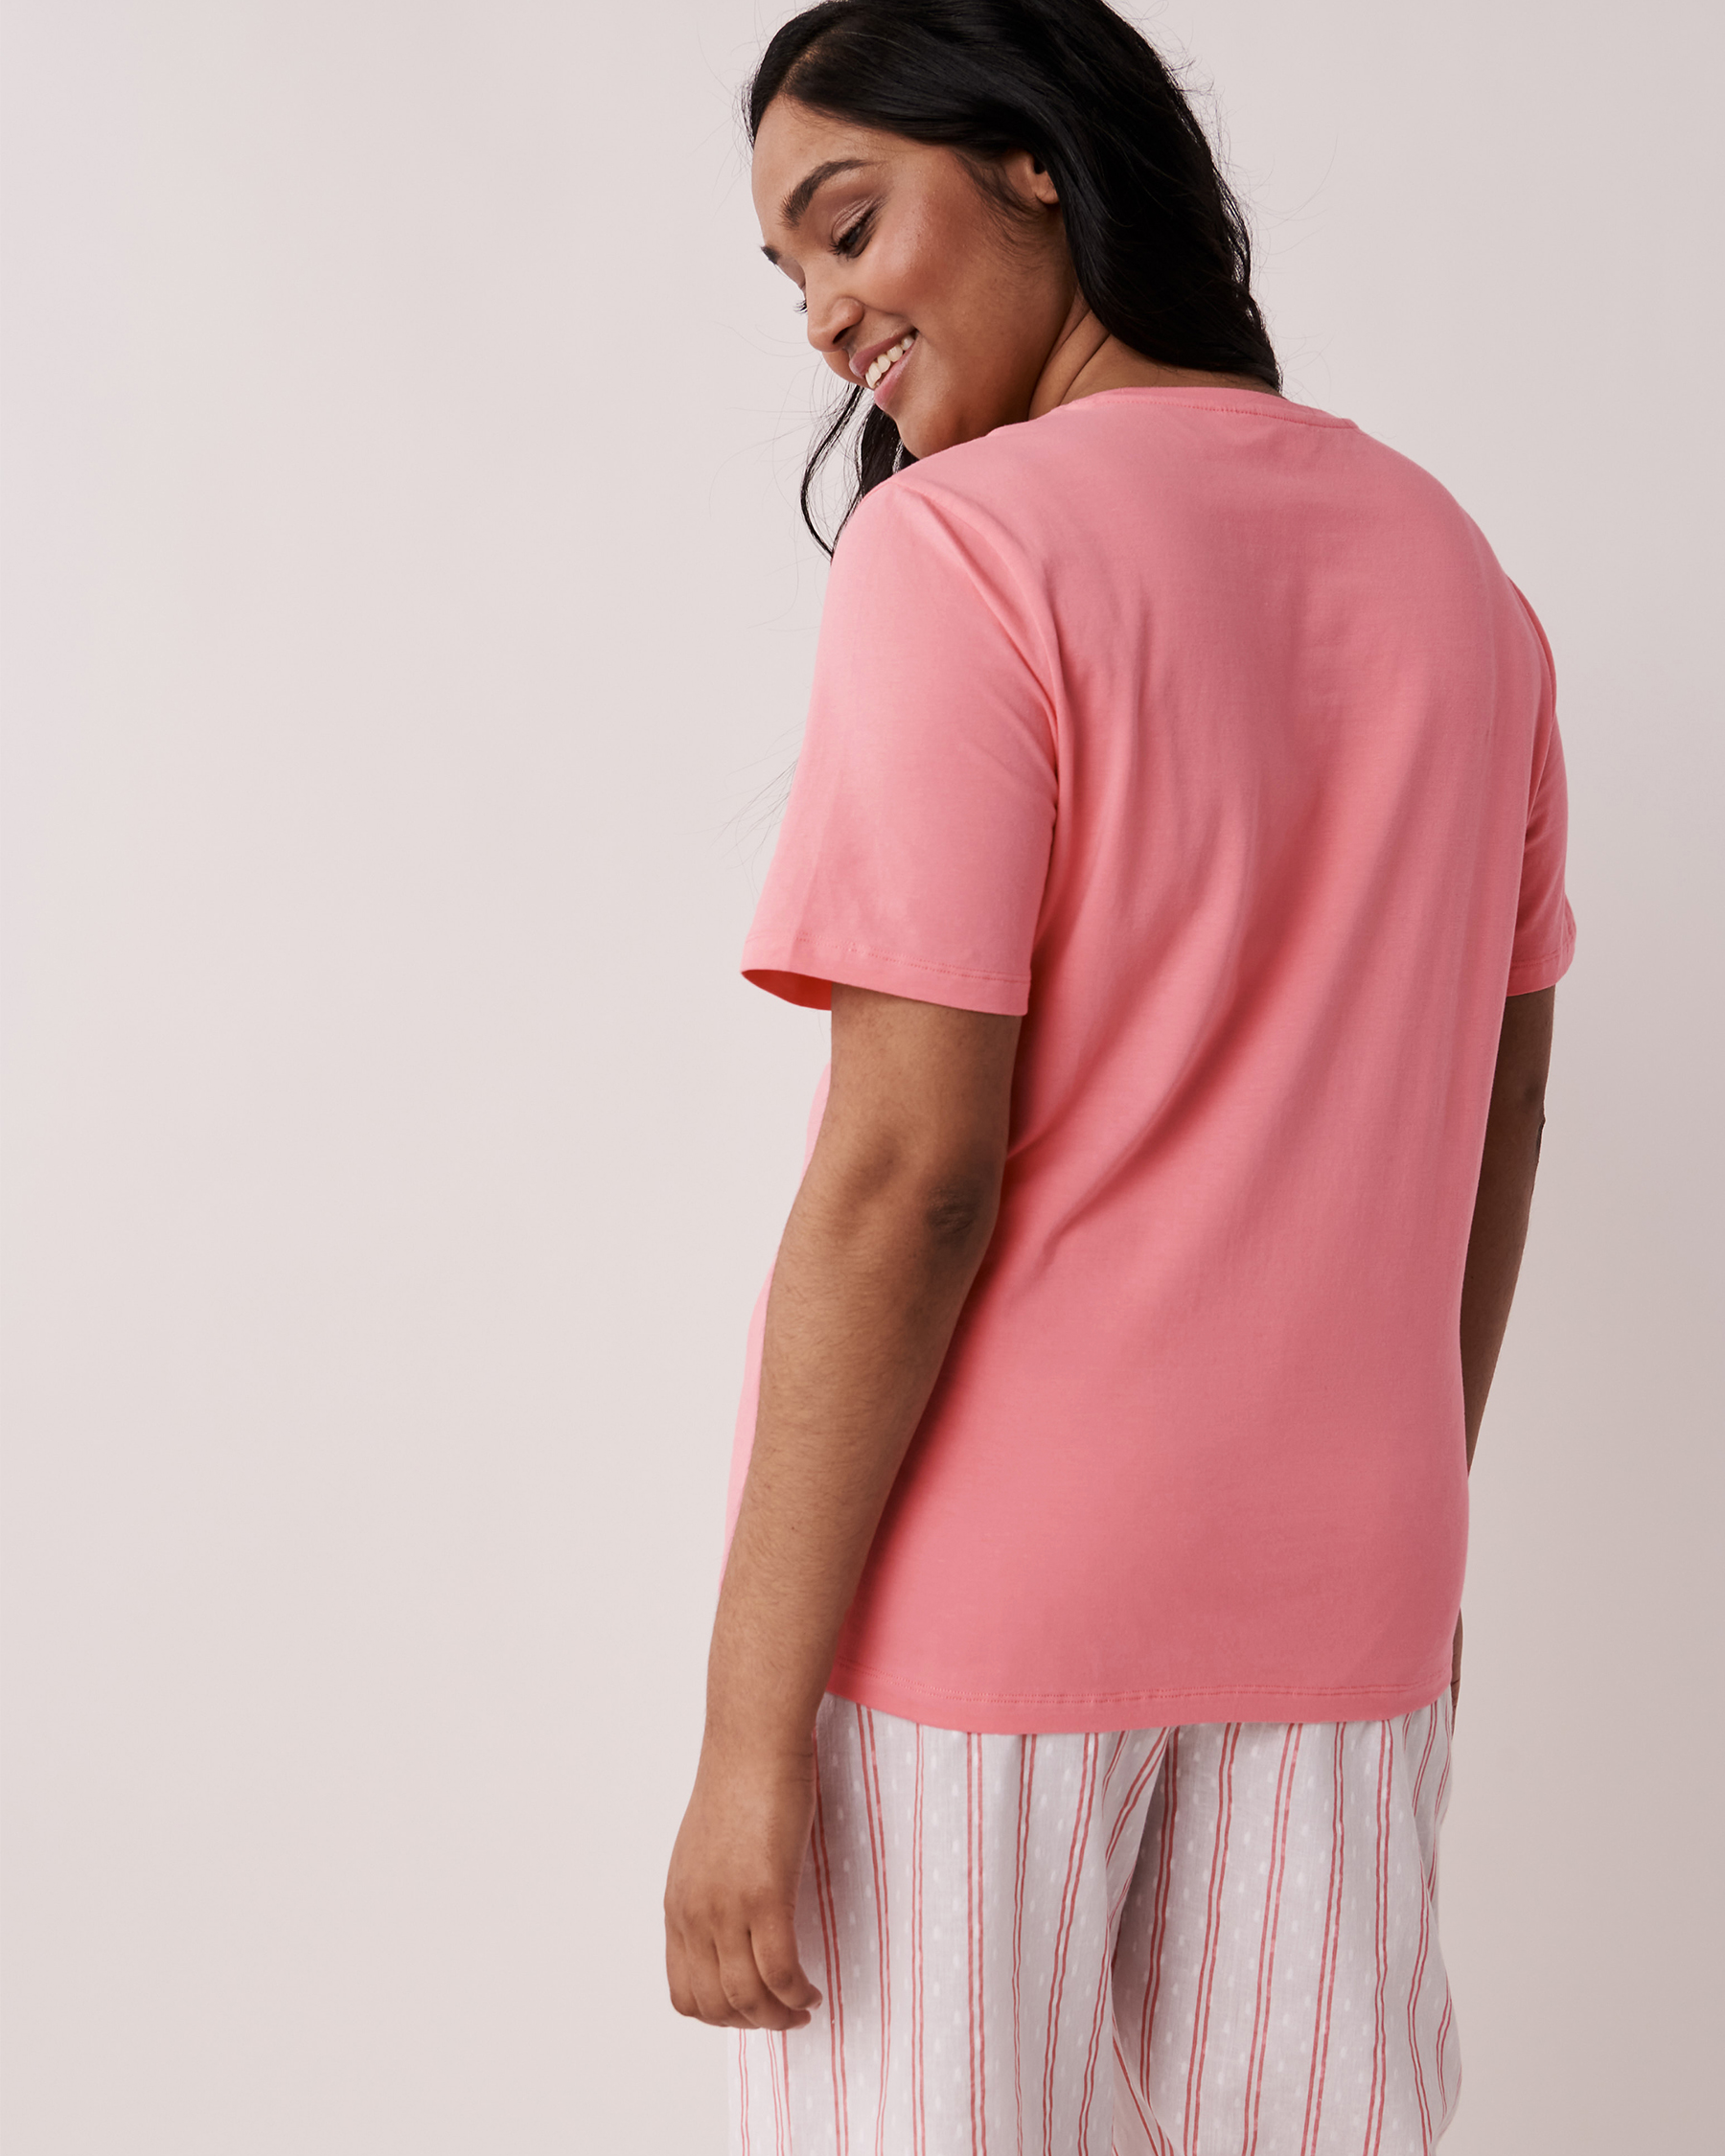 LA VIE EN ROSE Crew Neck T-shirt Flamingo pink 40100294 - View3